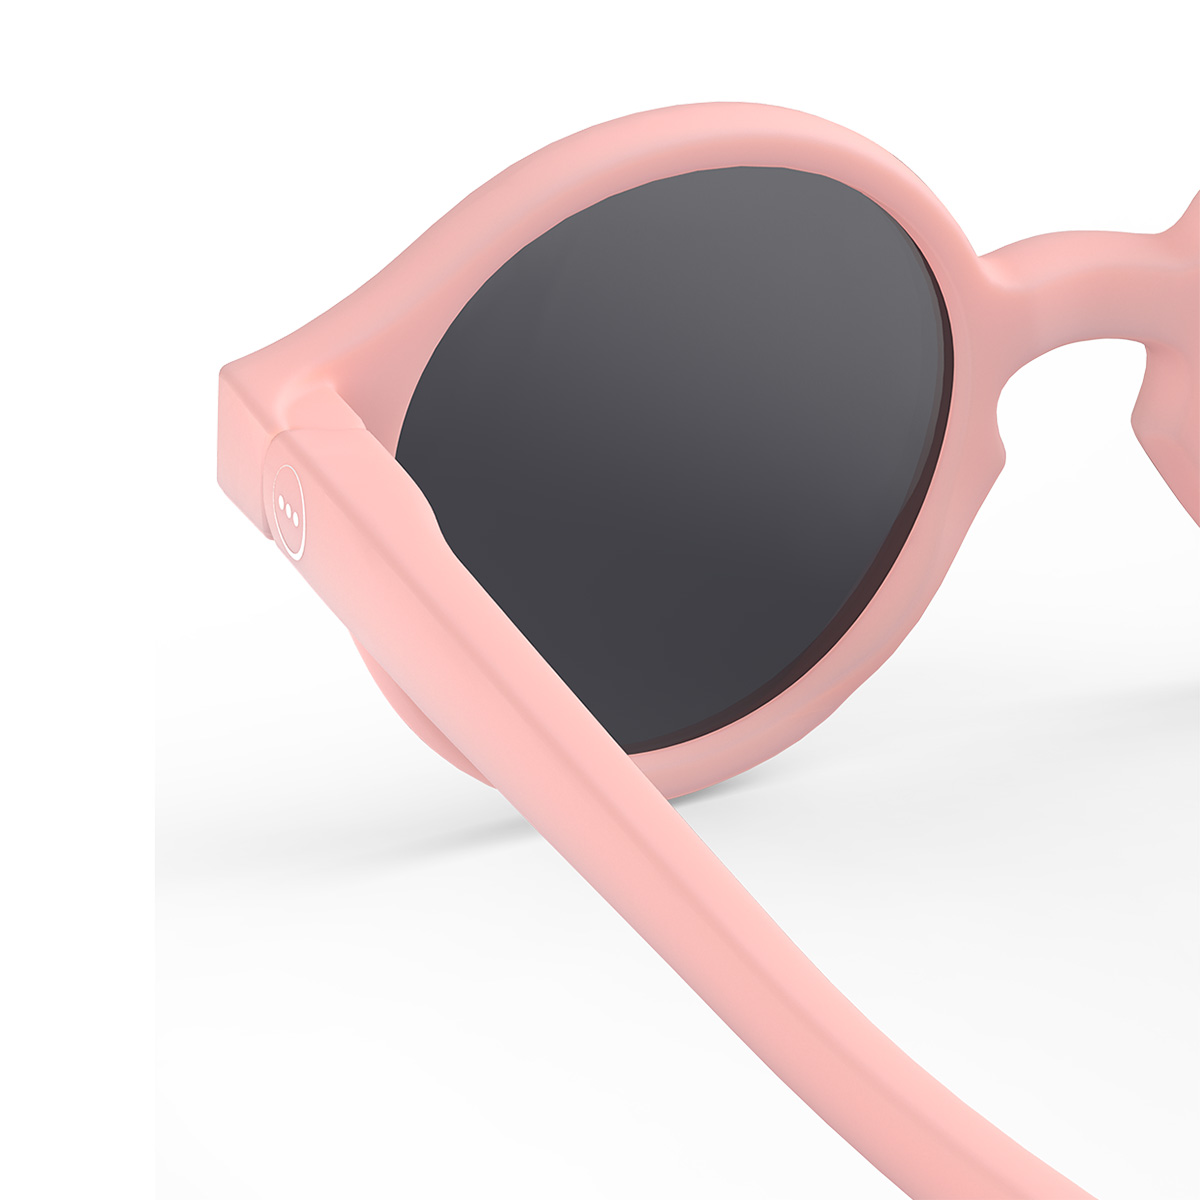 Sonnenbrille Baby Pastel Pink (0-9M)